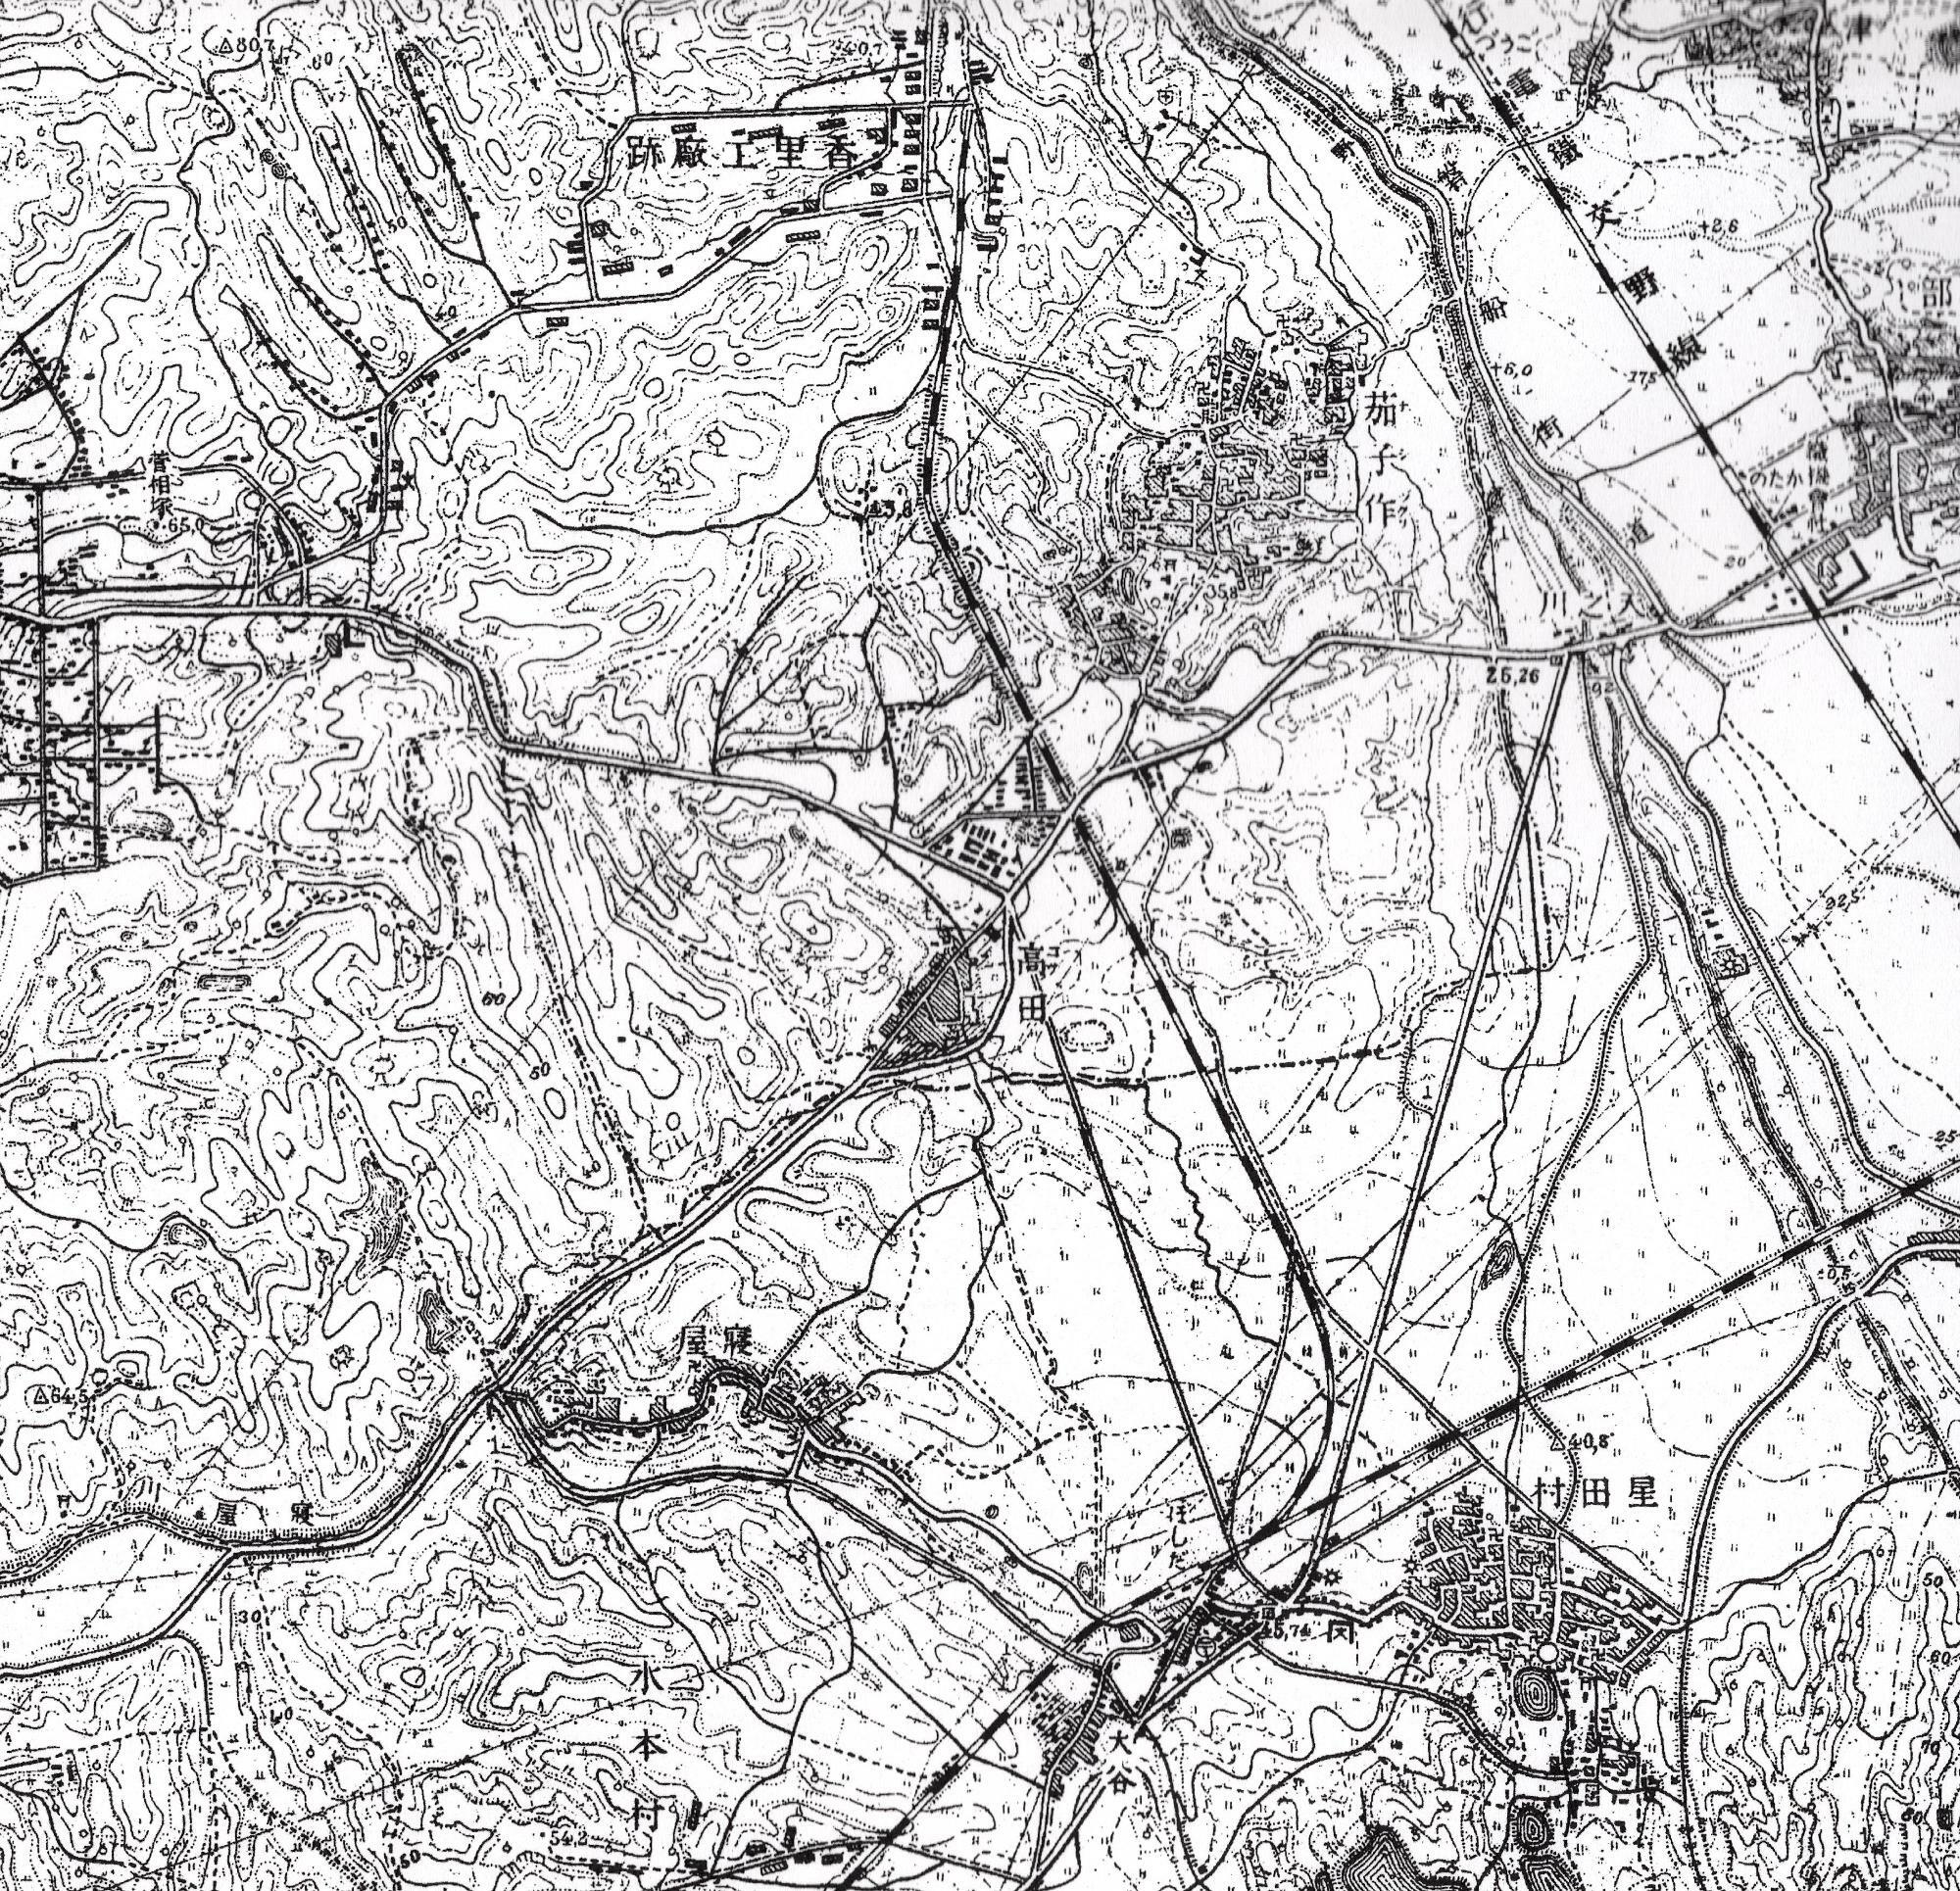 1947（昭和22）年測量の2万5千分の1地形図（国土地理院発行）に記された線路をたどると「香里工廠跡」という文字が